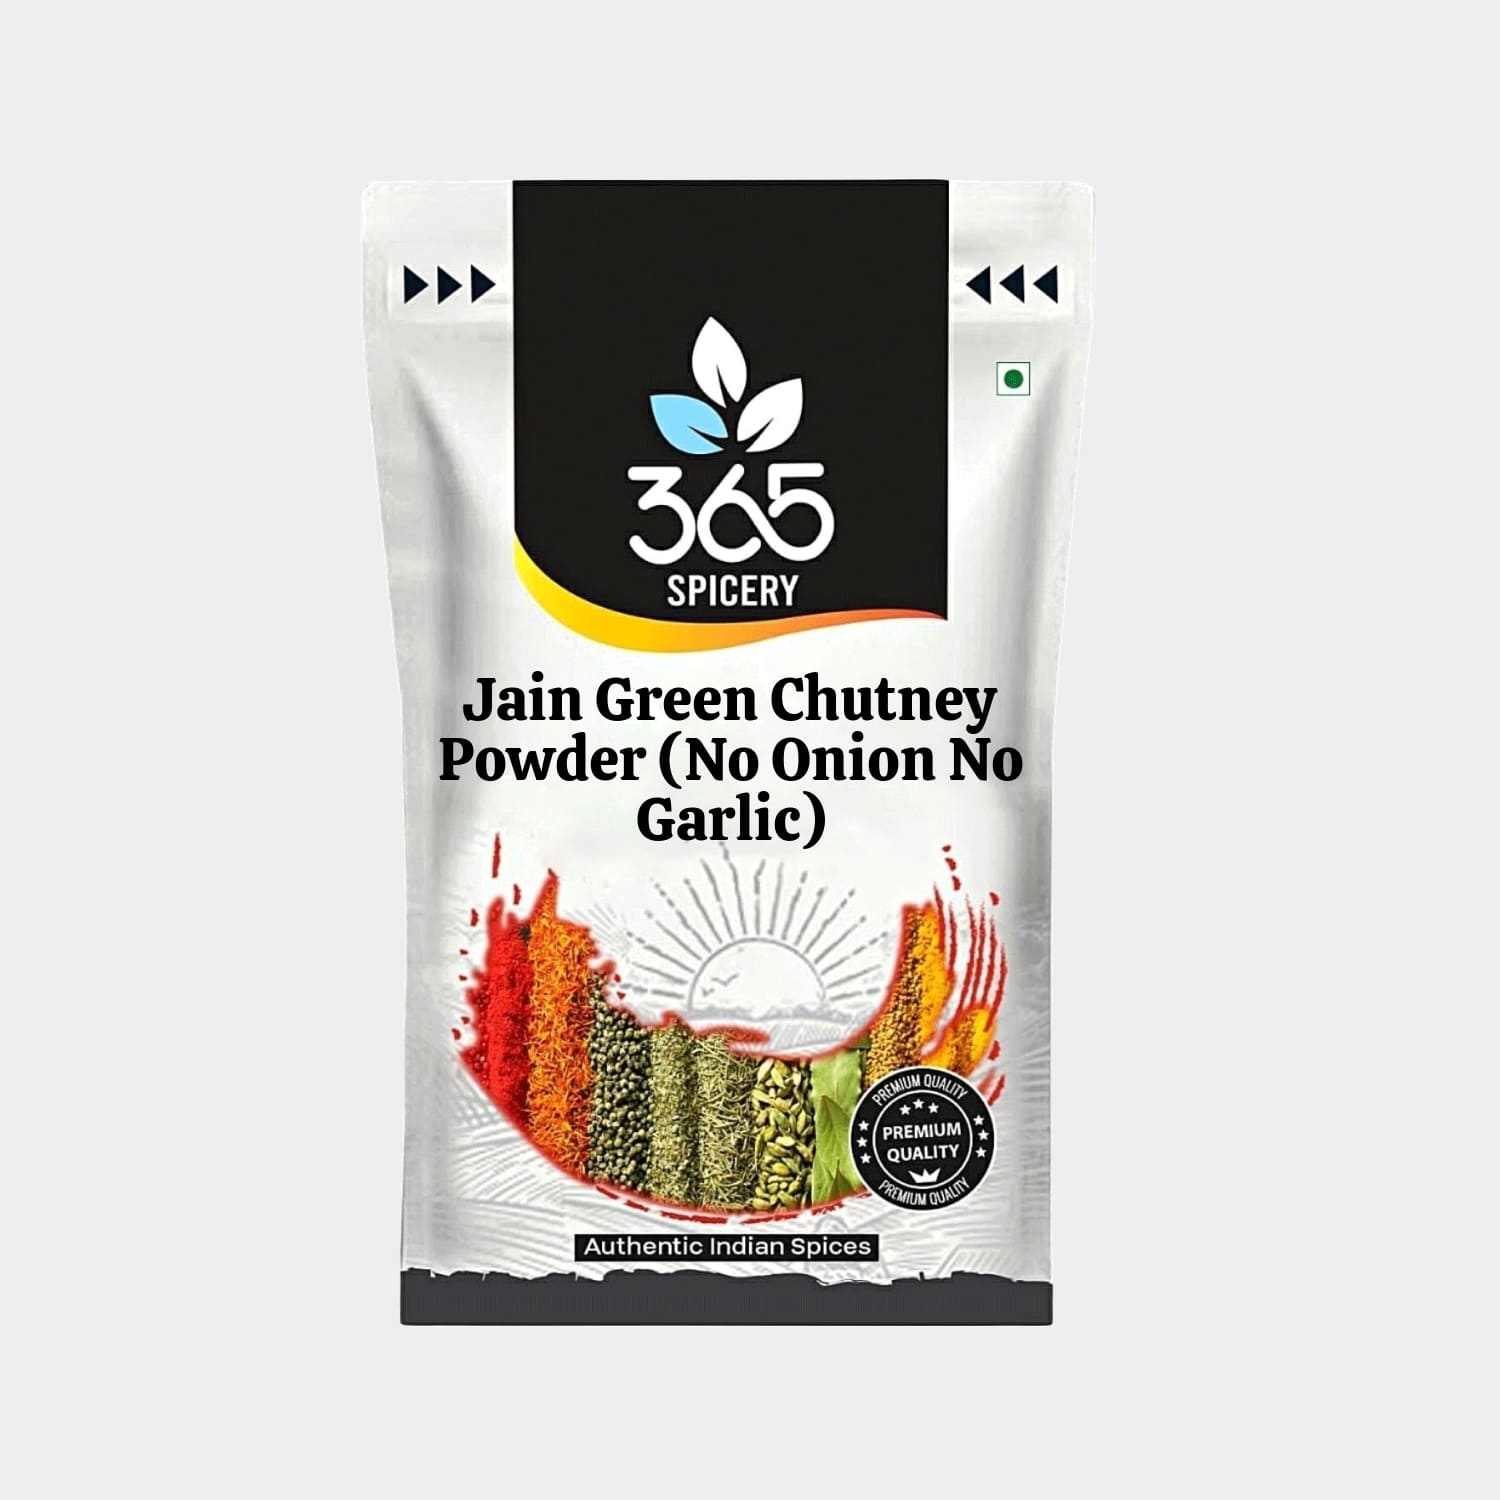 Jain Green Chutney Powder (No Onion No Garlic)